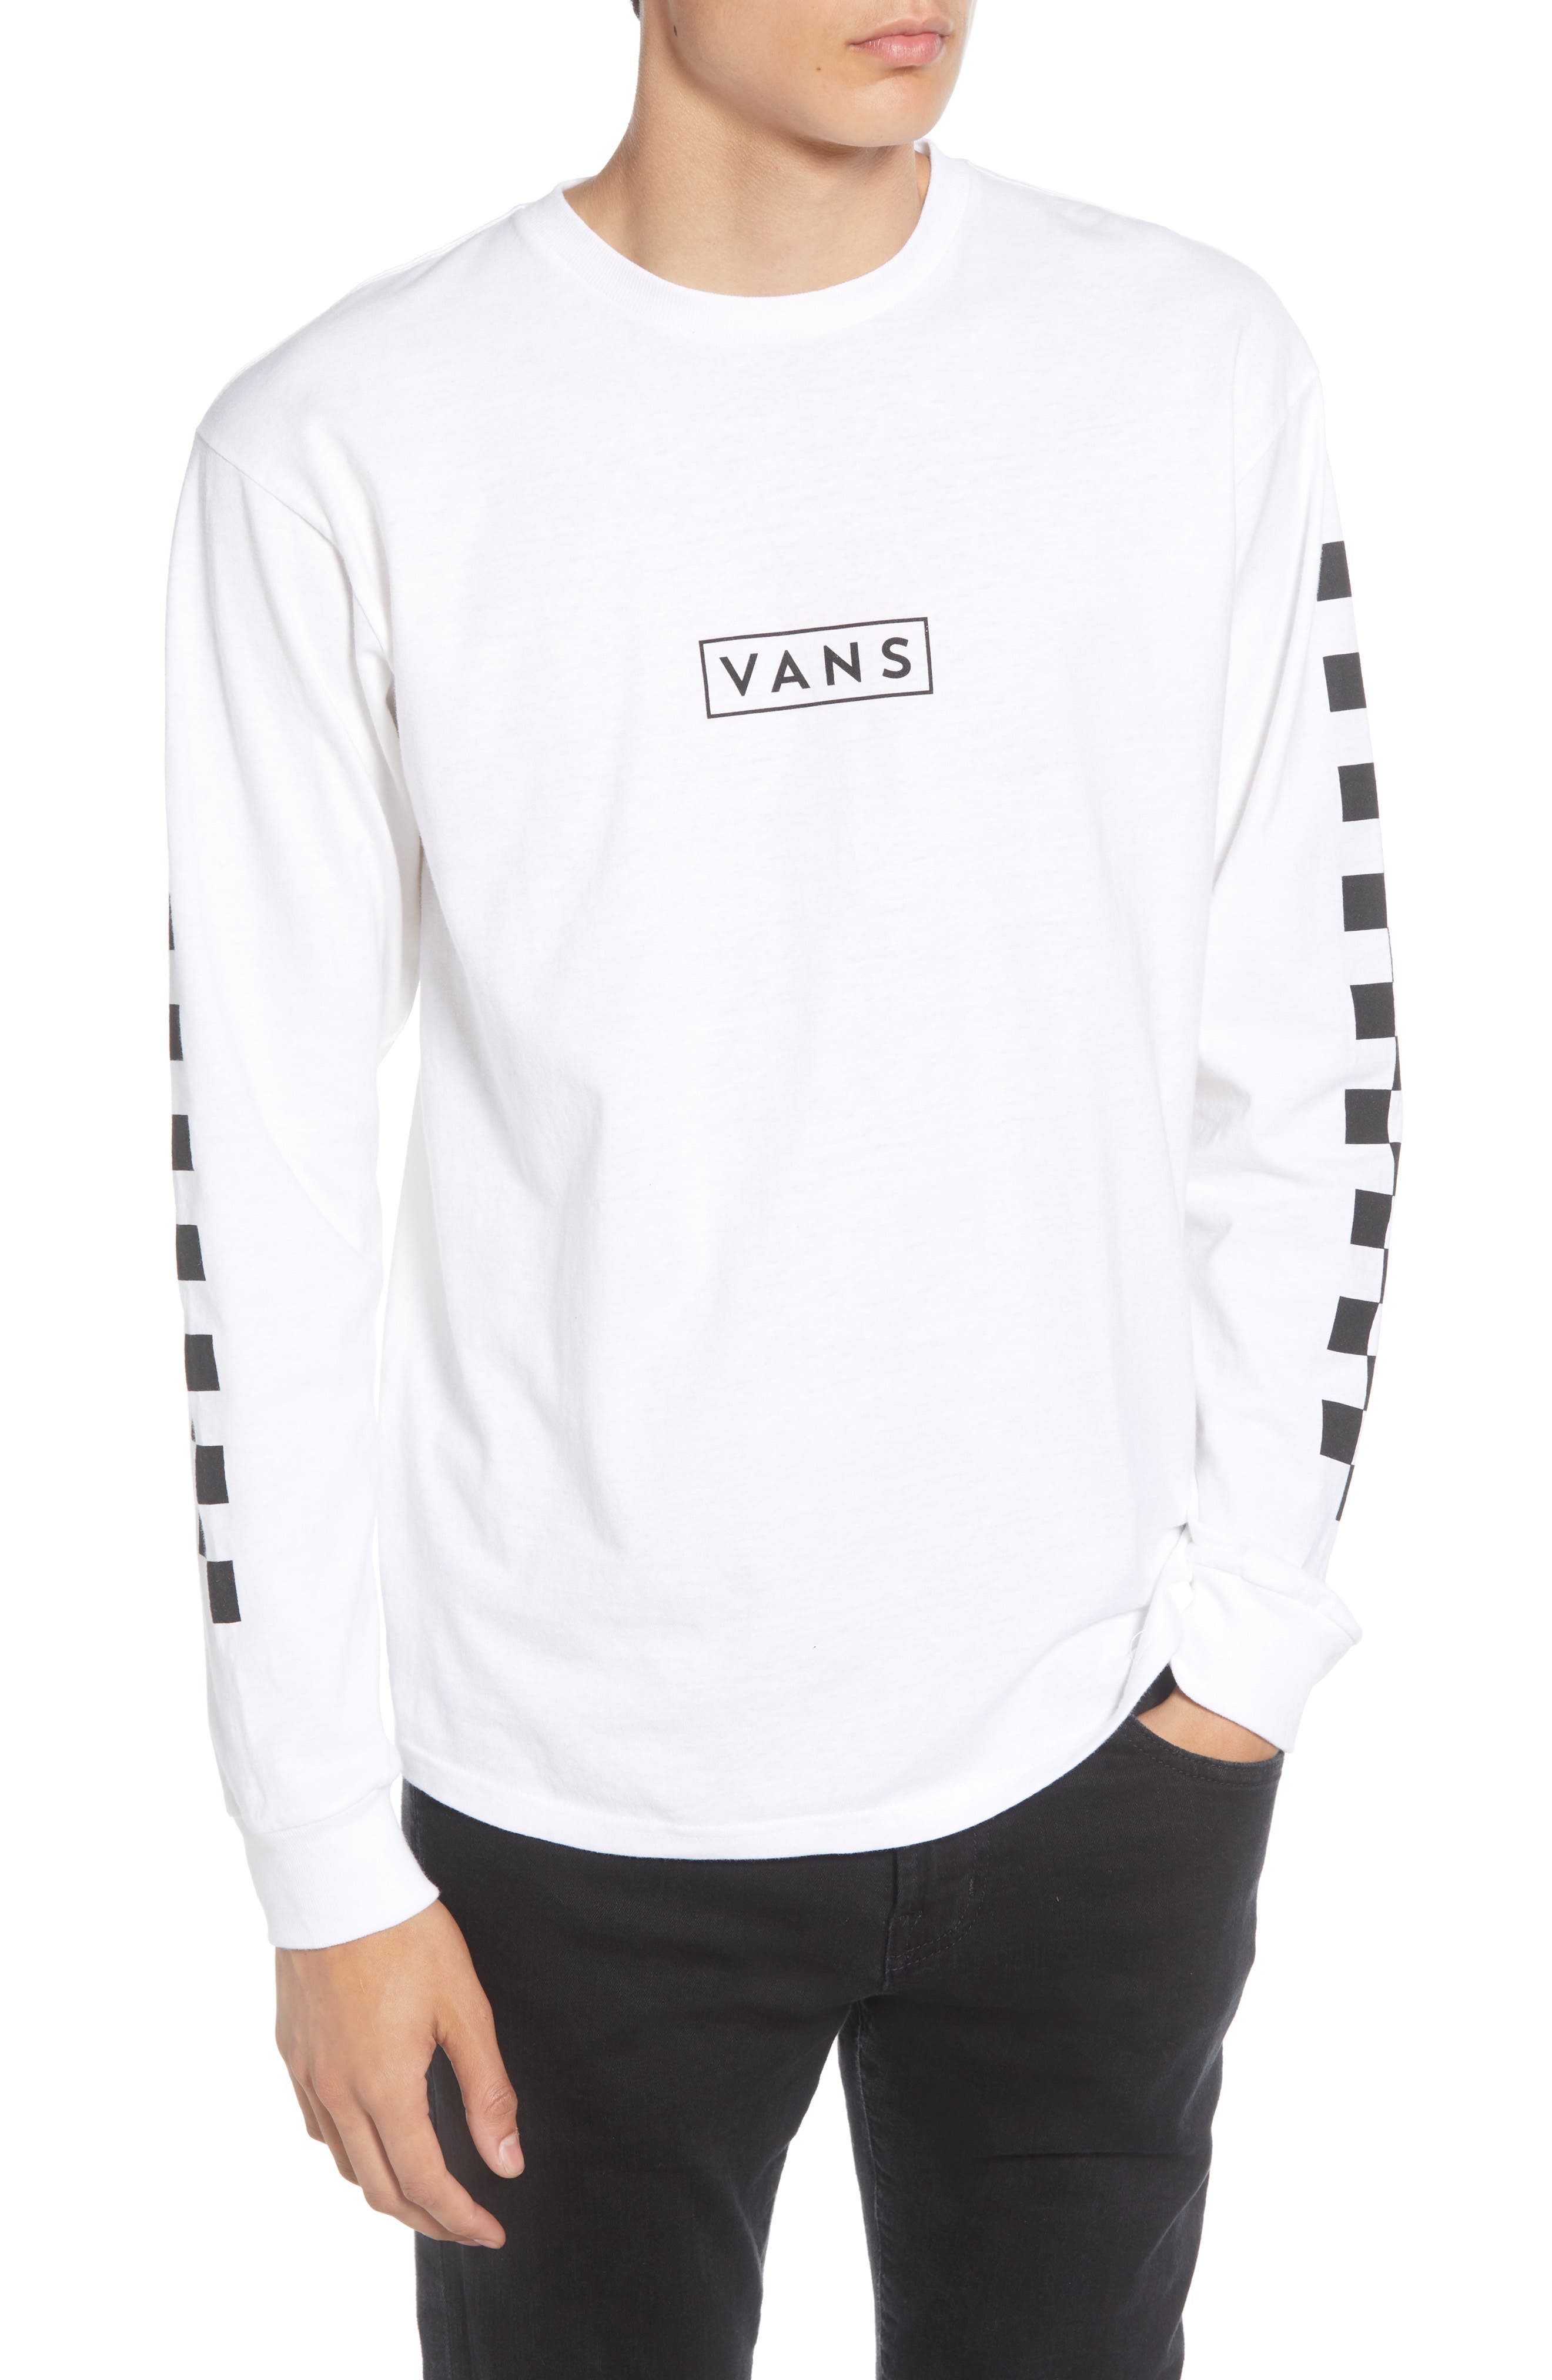 vans long sleeve shirt white